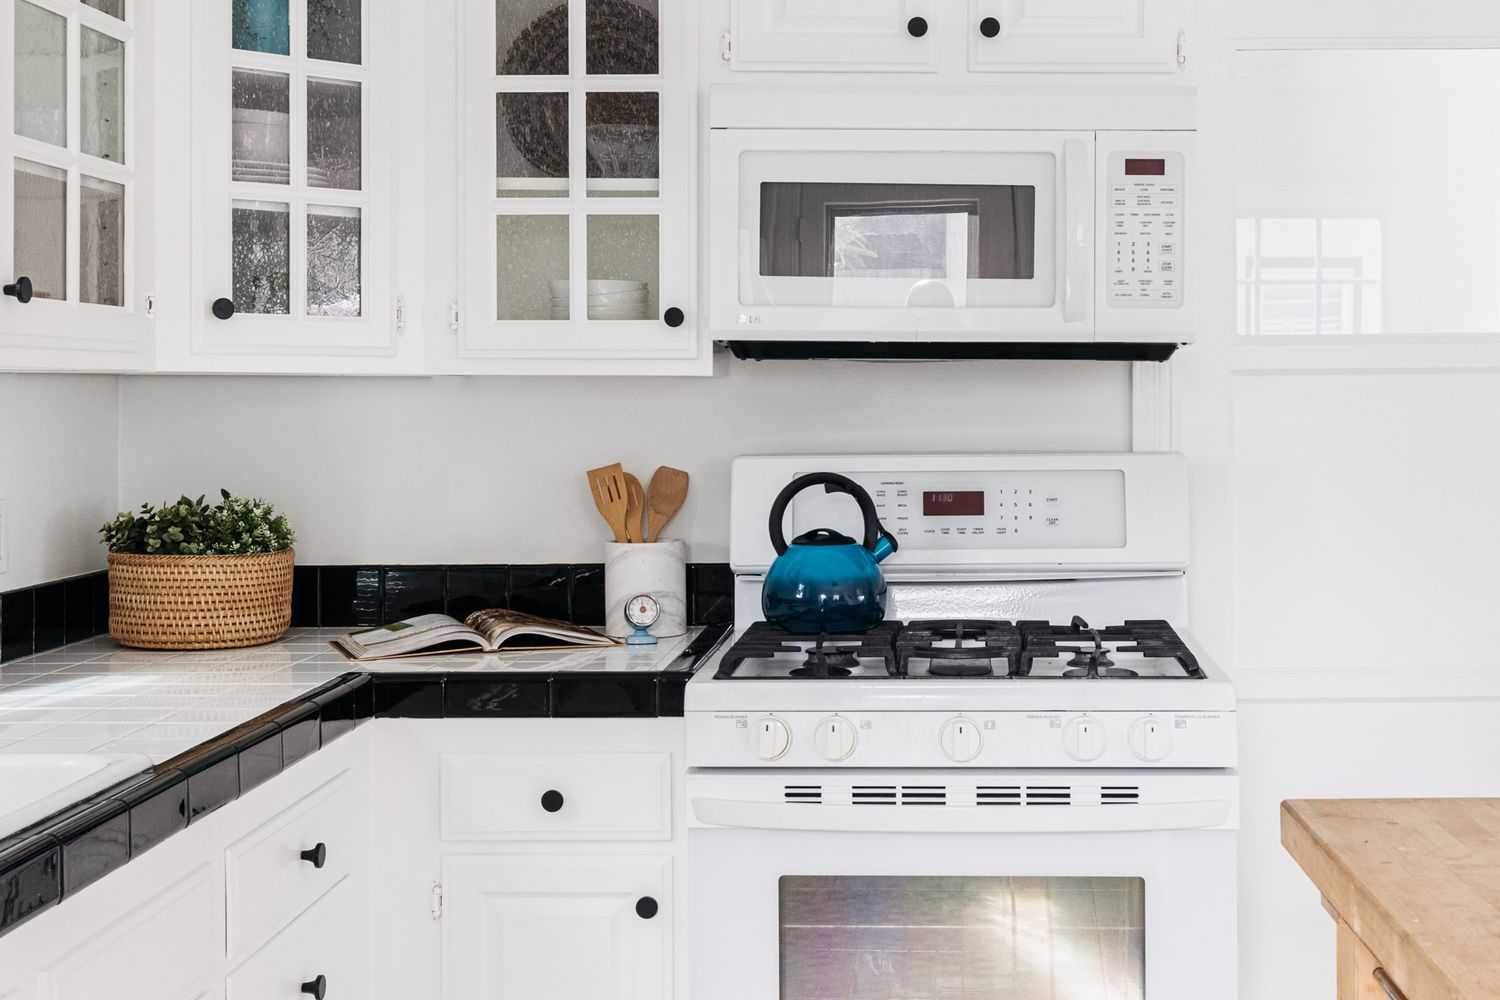 Cocina moderna con todos los armarios y electrodomésticos blancos con decoración luminosa sobre azulejos cuadrados blancos y negros